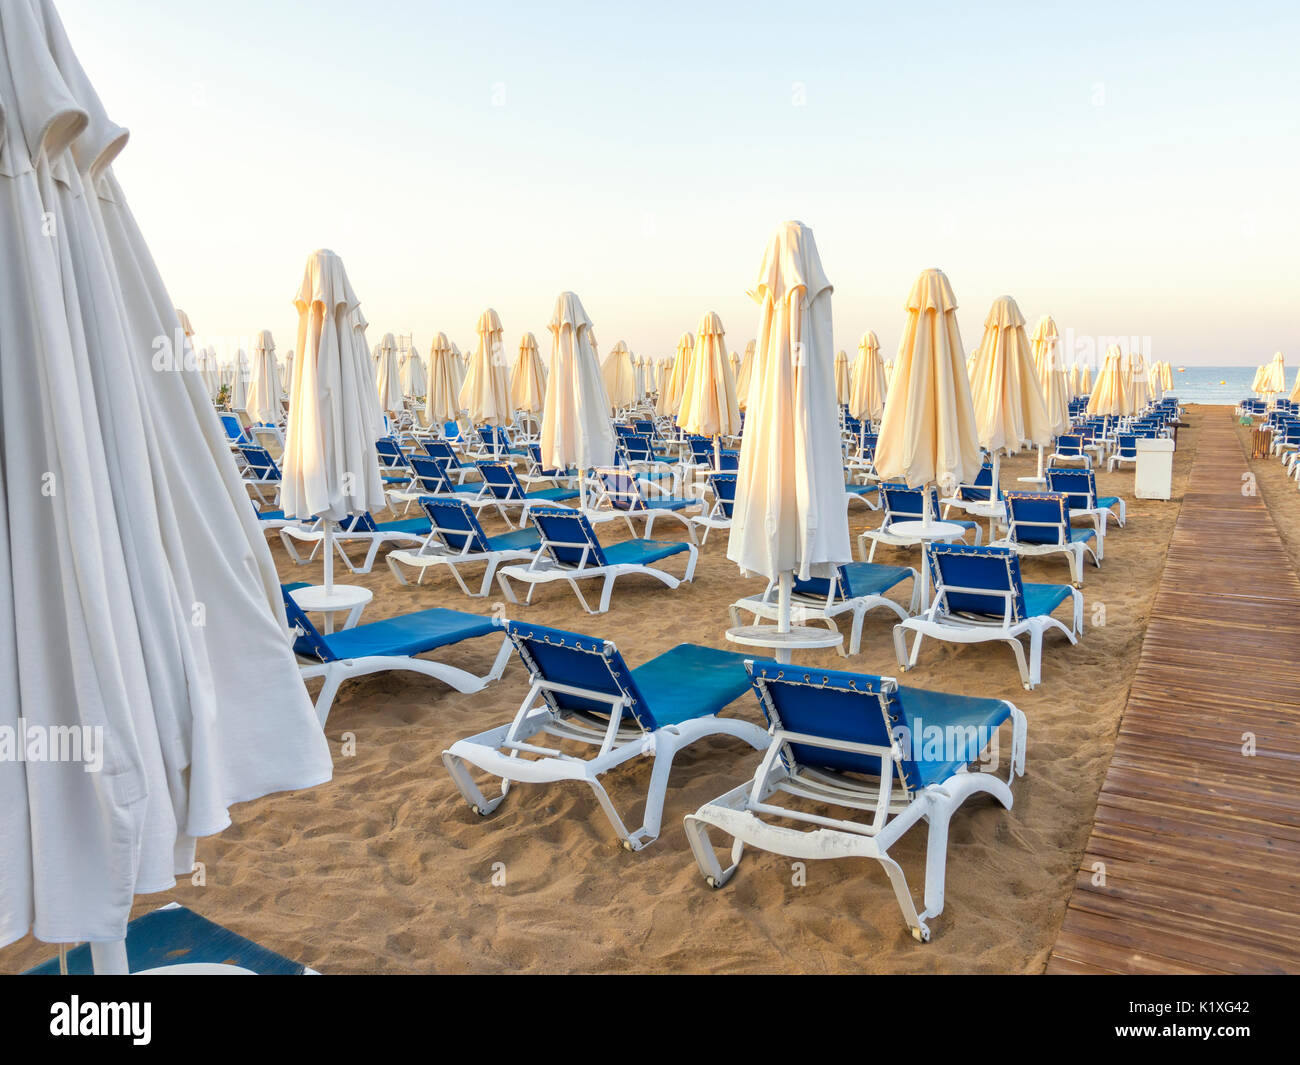 Playa de arena a la mar con sendero de madera, hamacas, sombrillas, Turquía, Side resort Foto de stock